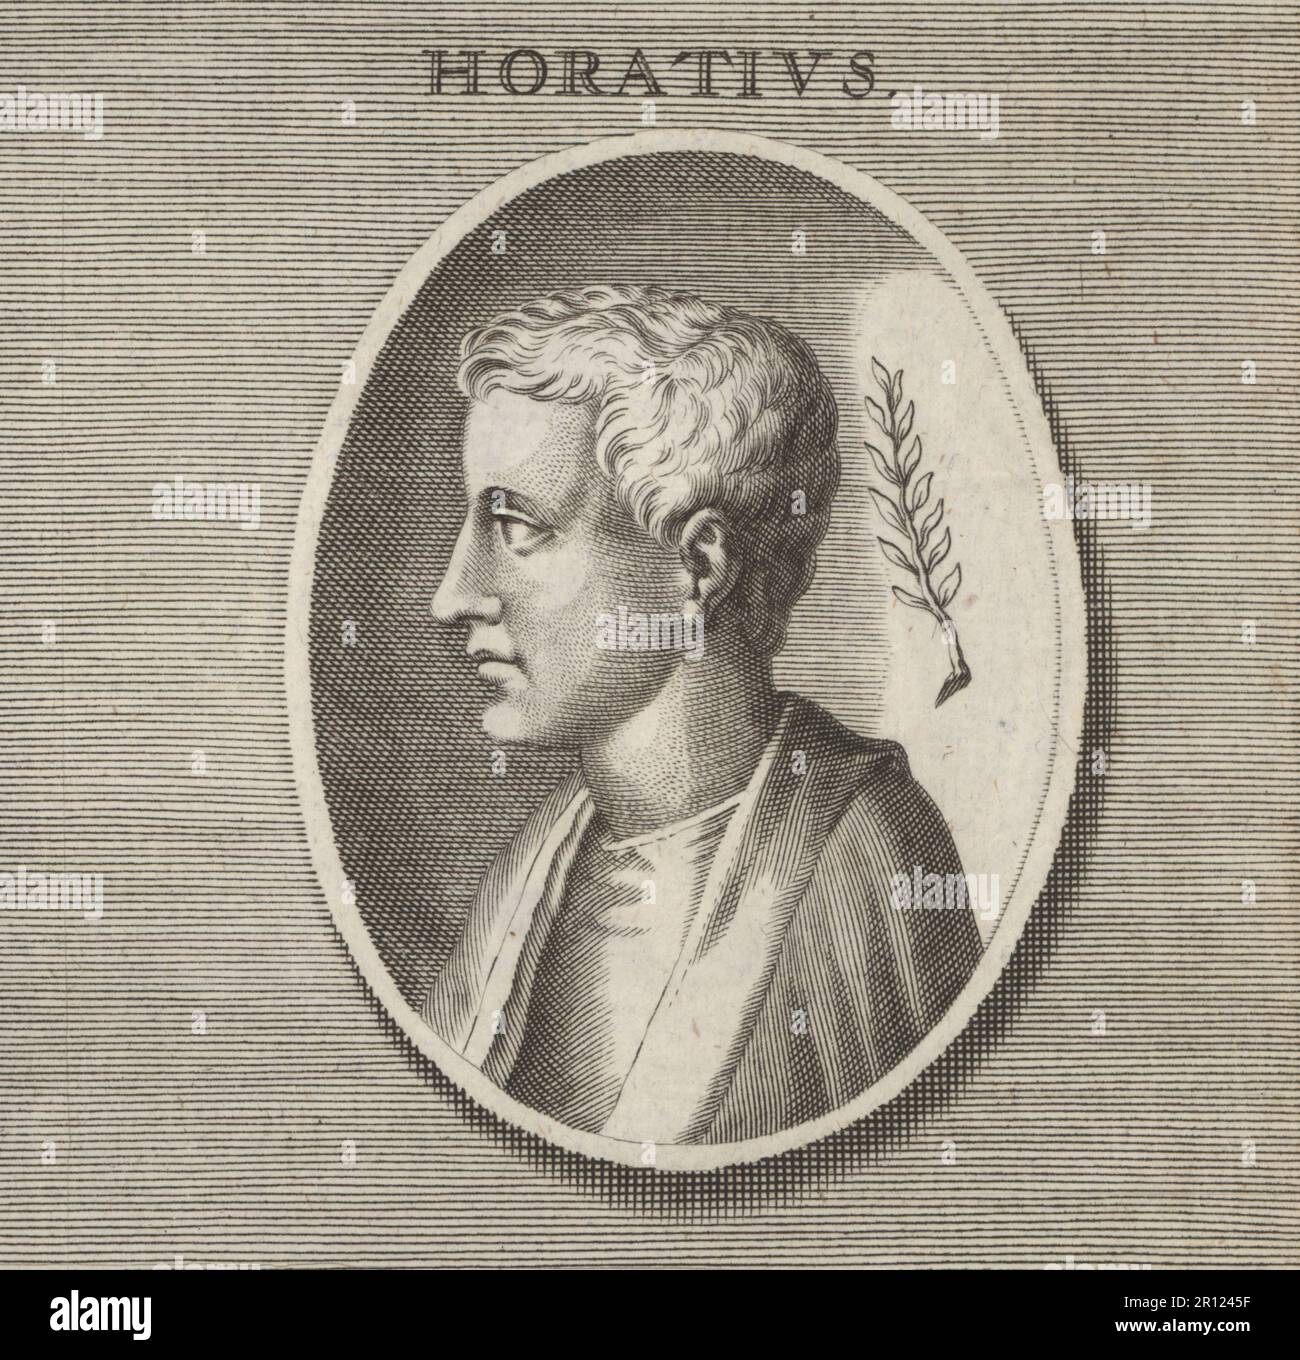 Horace (poète latin) - Vikidia, l'encyclopédie des 8-13 ans